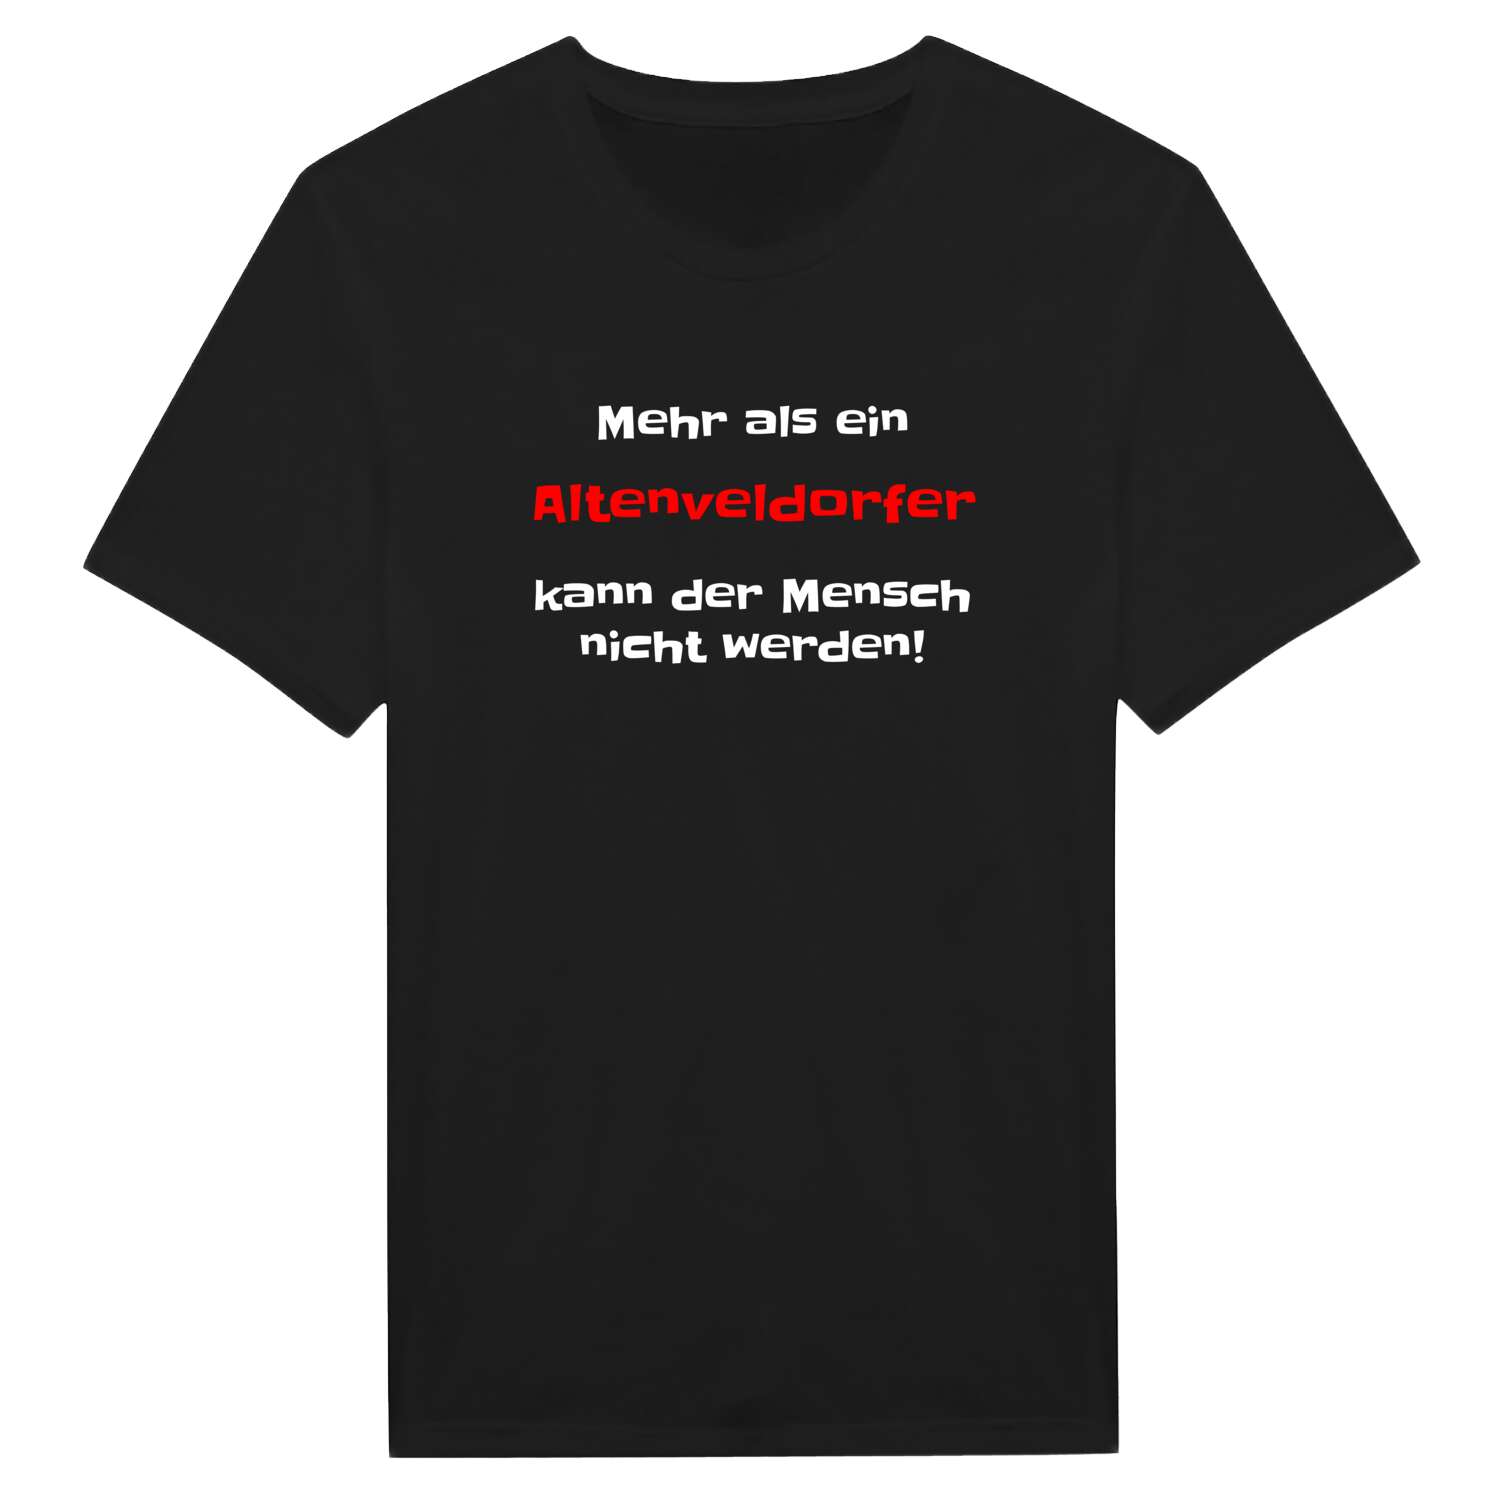 Altenveldorf T-Shirt »Mehr als ein«